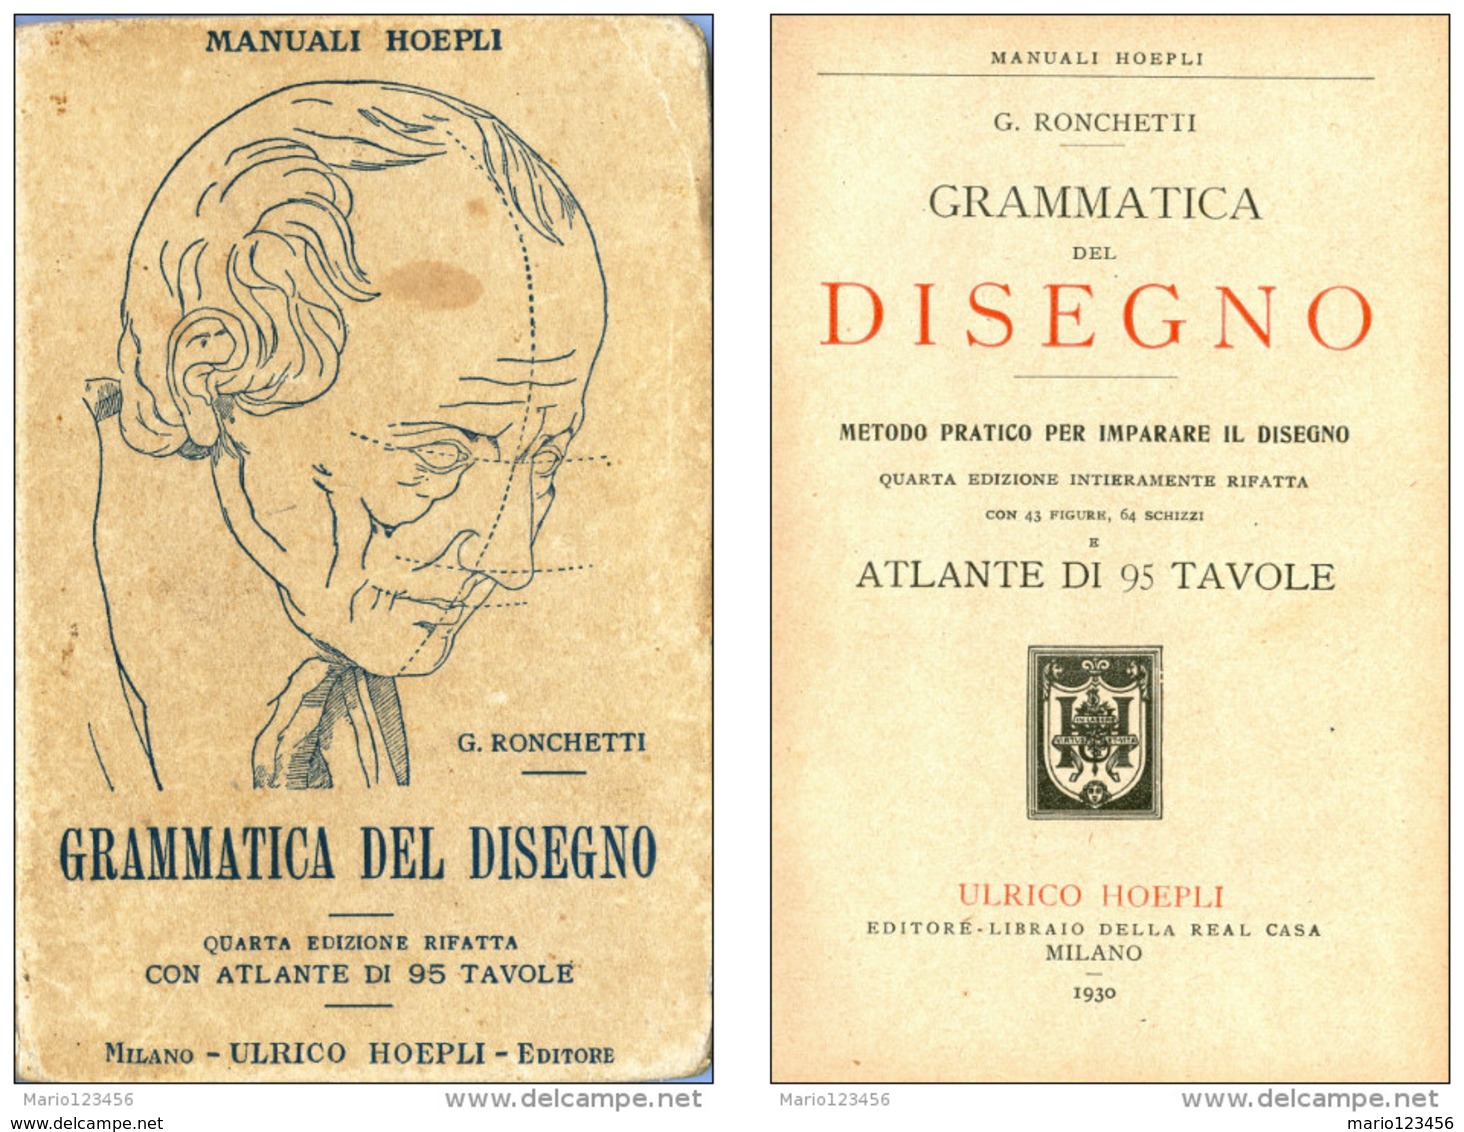 MANUALE HOEPLI, GRAMMATICA DEL DISEGNO, G. RONCHETTI, QUARTA EDIZIONE, 1930 - Arts, Architecture